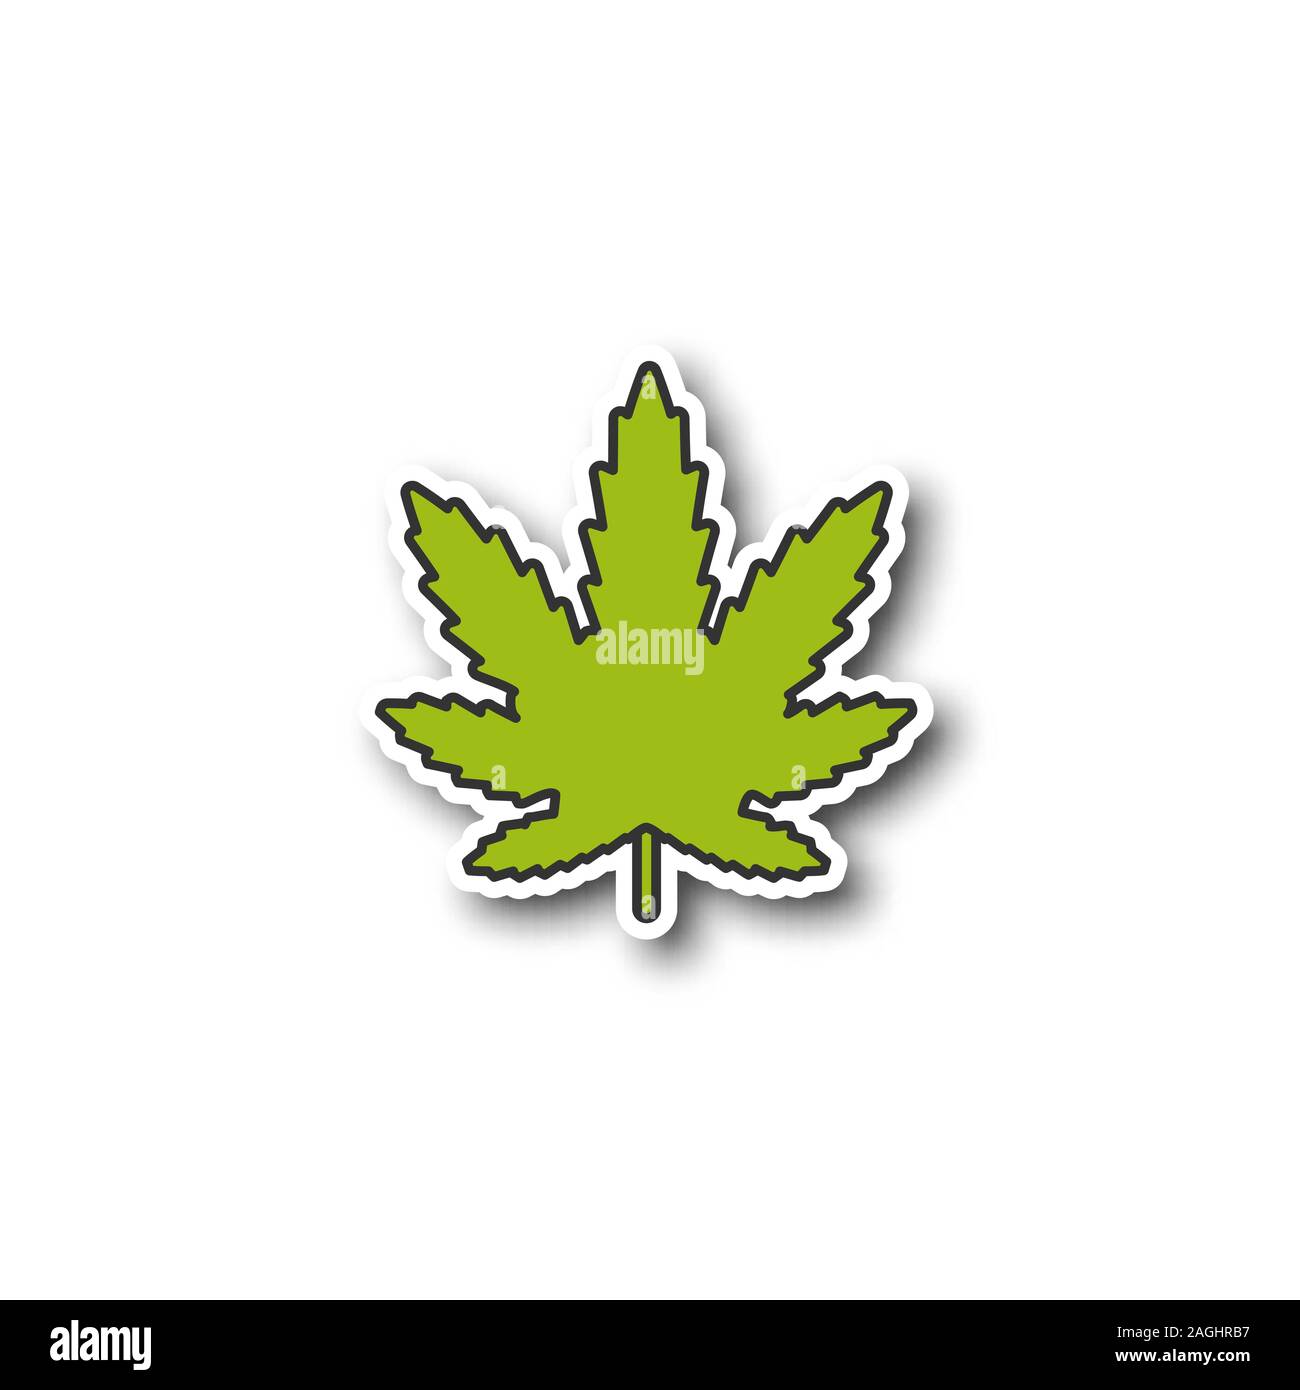 Autocollant D'icône De Chanvre De Logo Coloré De Cannabis De Feuille  Autocollant Rétro Hippie De Marijuana Médicale